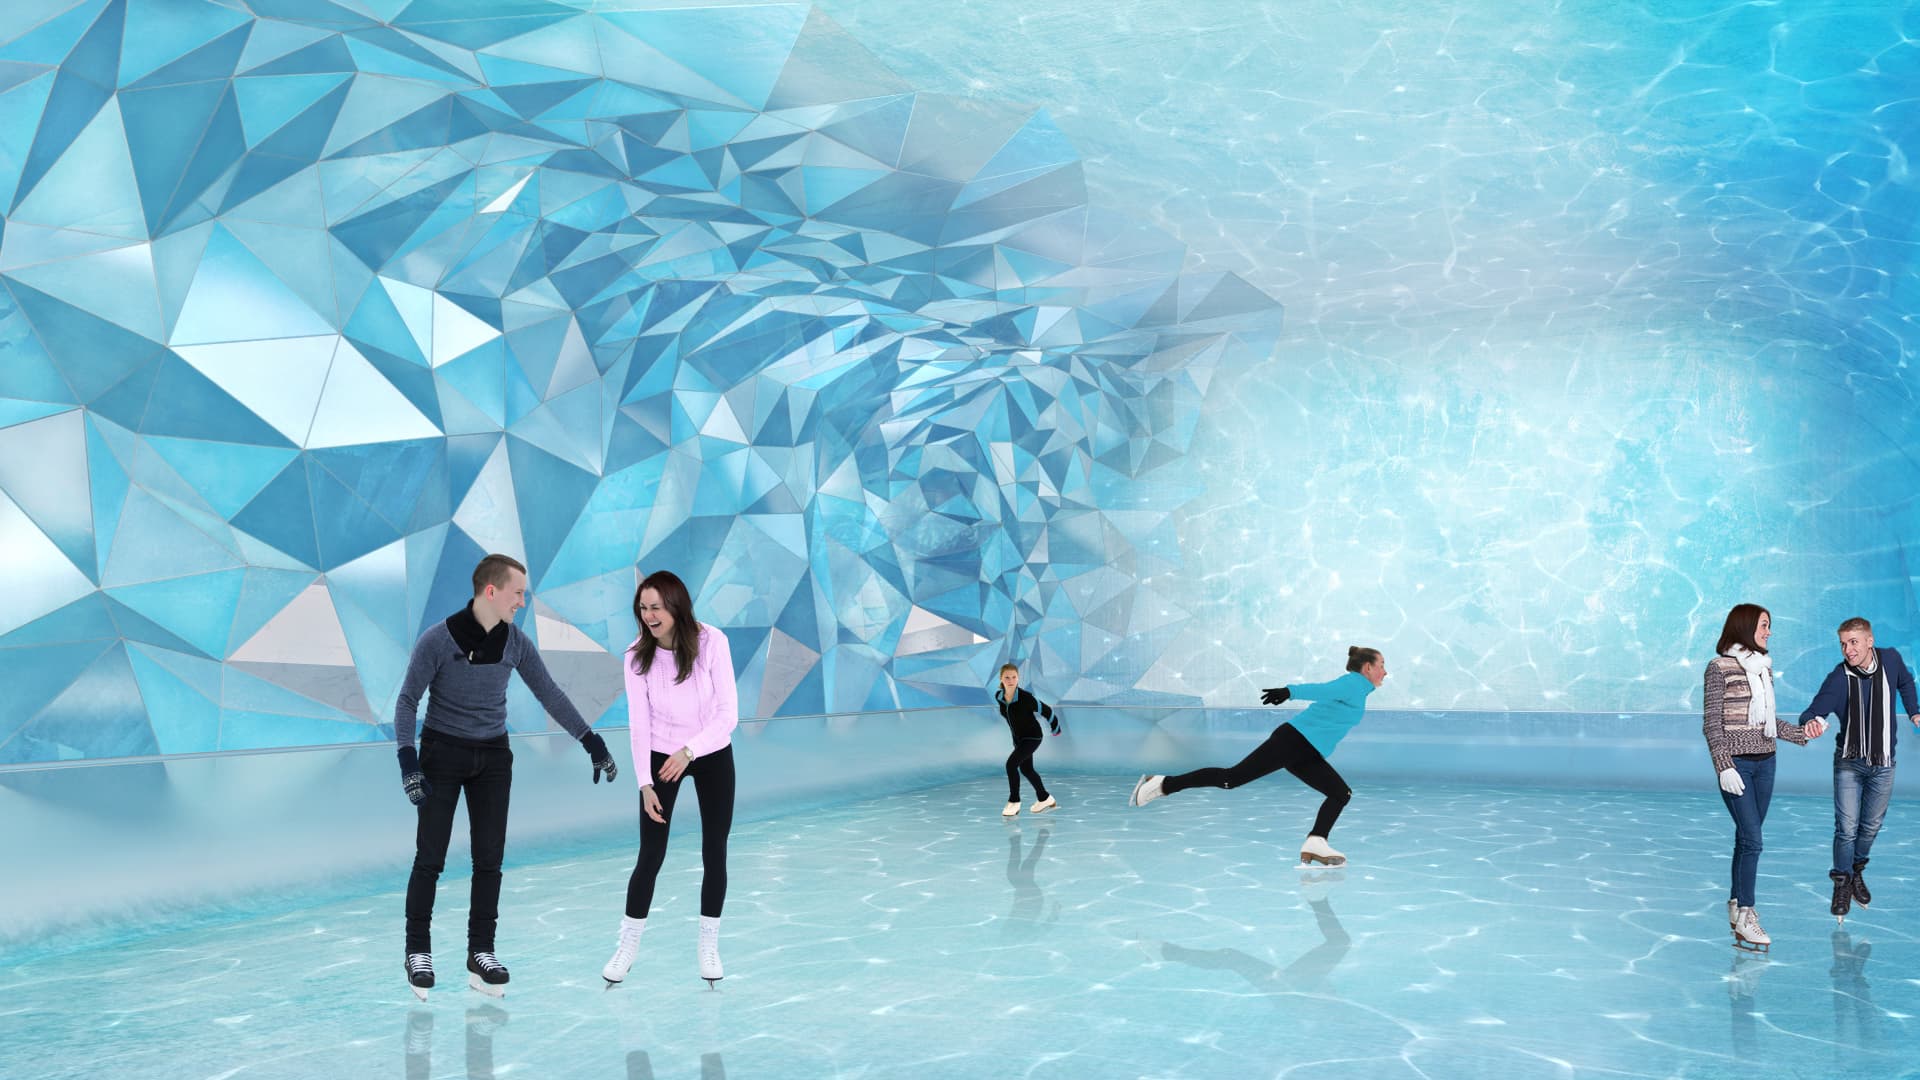 A marketing image of Aqualina's ice skating rink